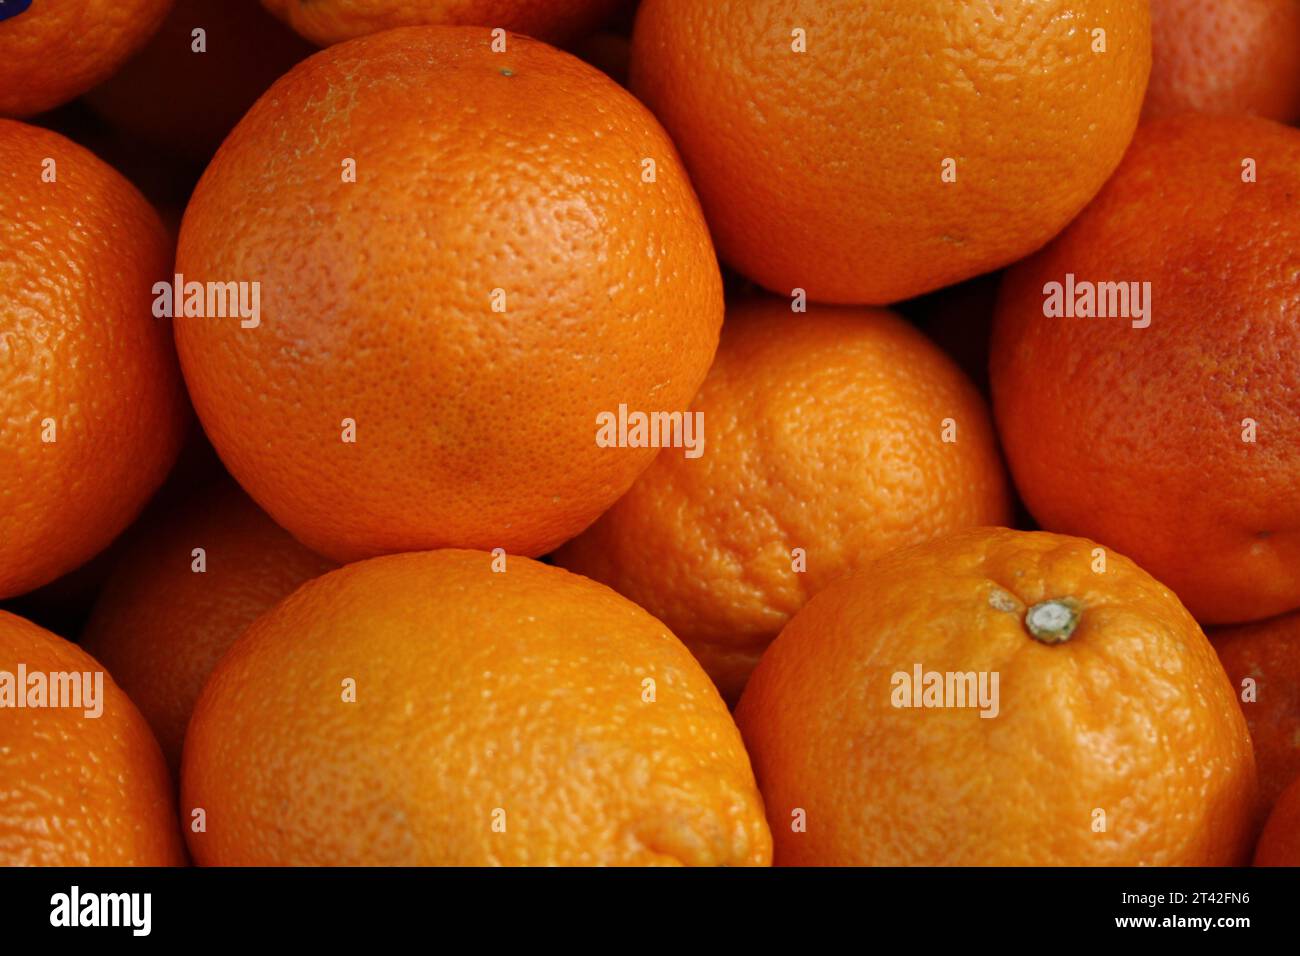 Un'immagine di natura morta di un vivace assortimento di agrumi appena raccolti, con una sola arancia in cima alla pila Foto Stock